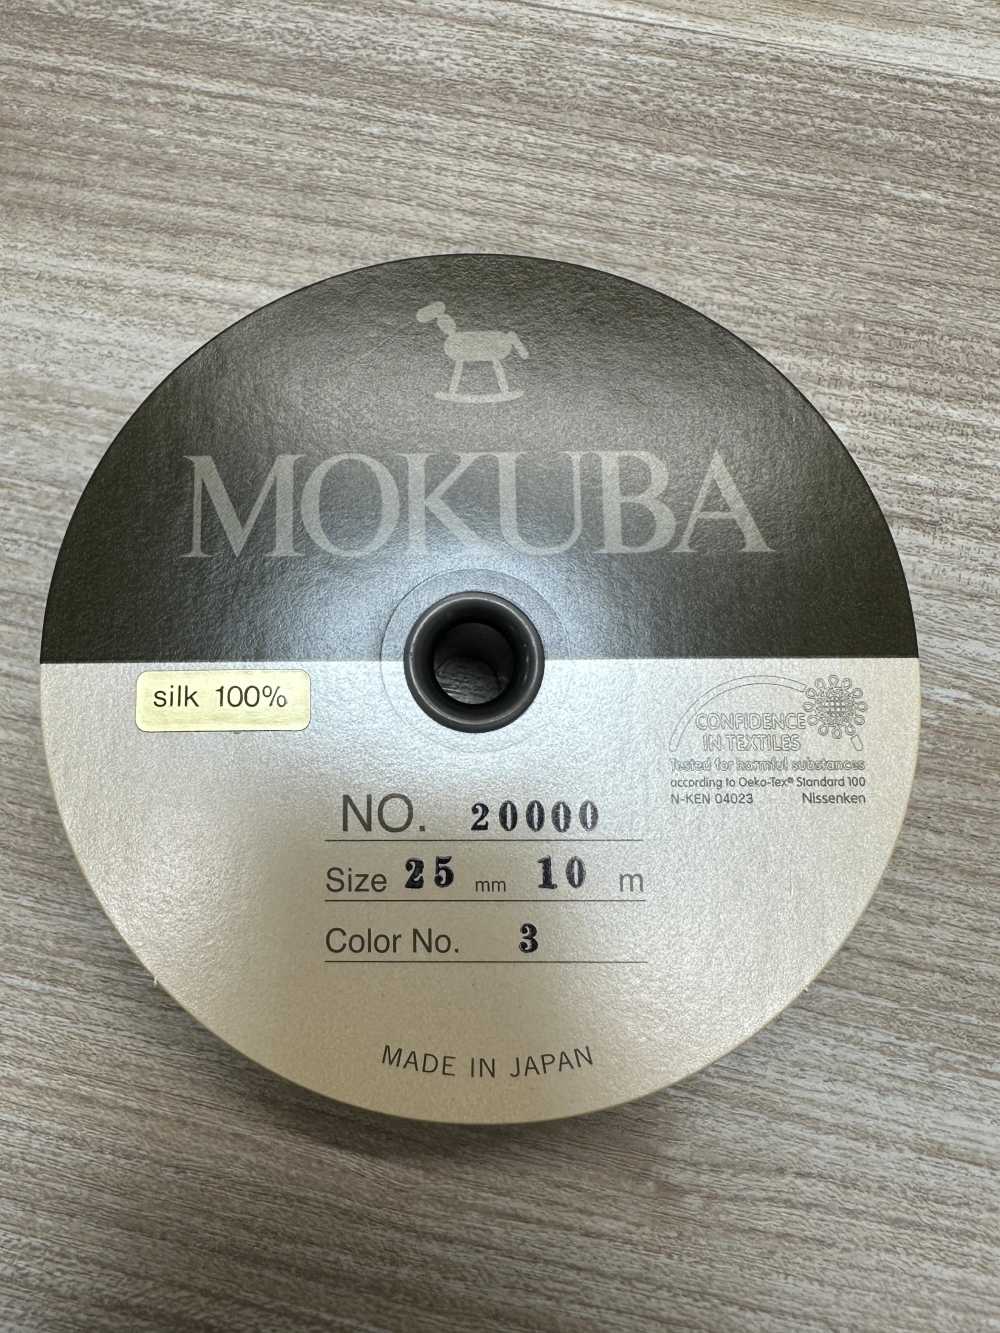 20000 MOKUBA Seiden-Ripsband [Outlet][Bandbandschnur] Mokuba